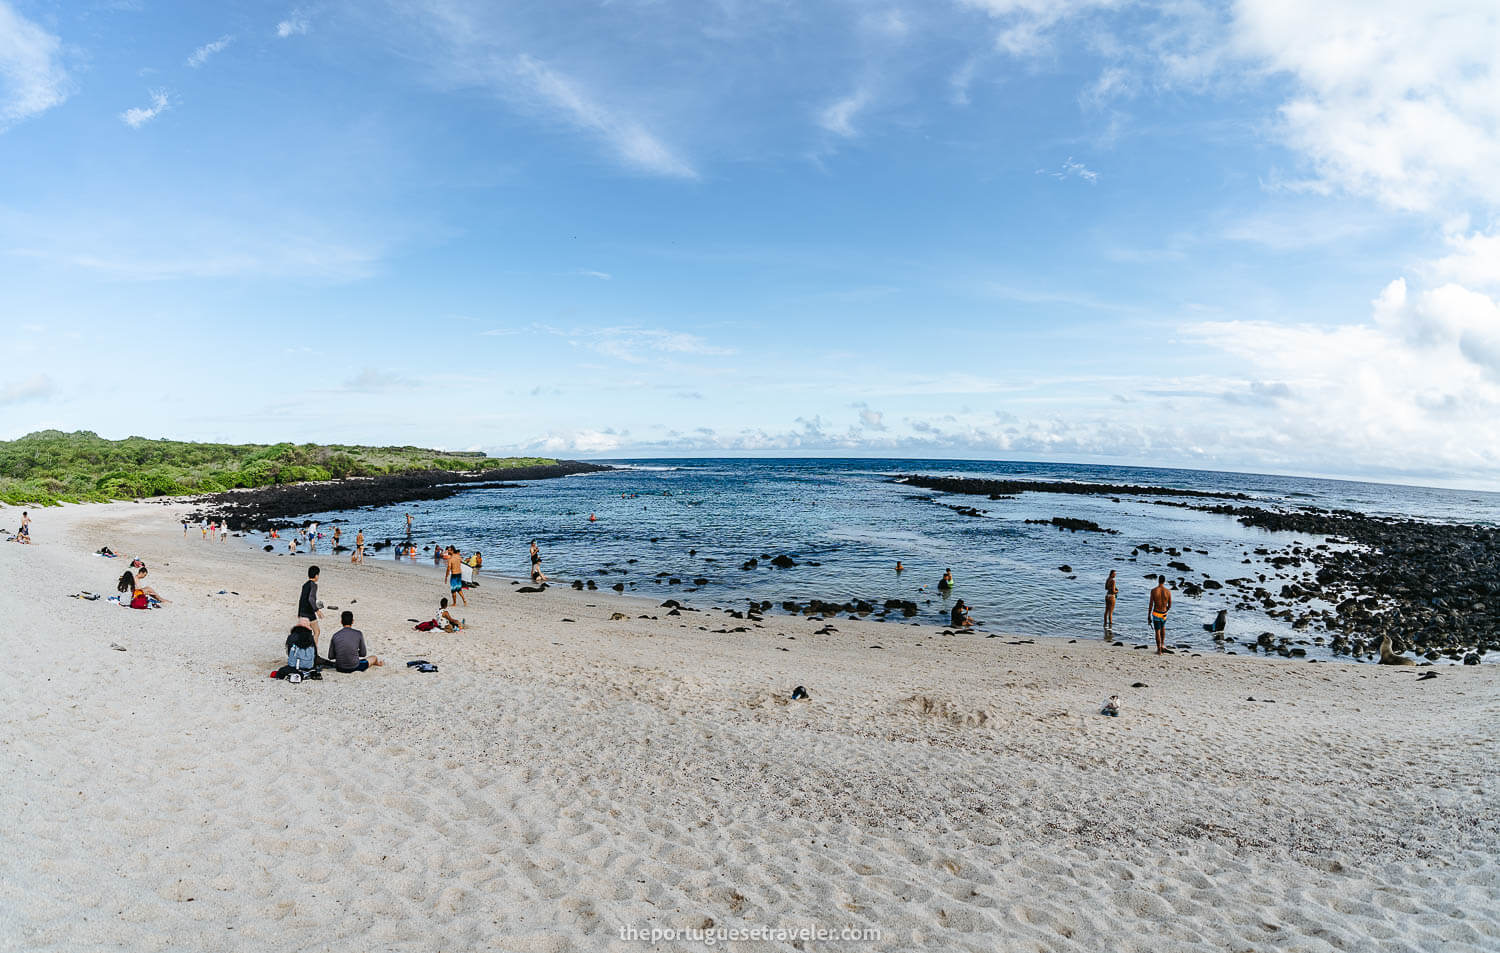 La Loberia Beach in San Cristobal, Galapagos